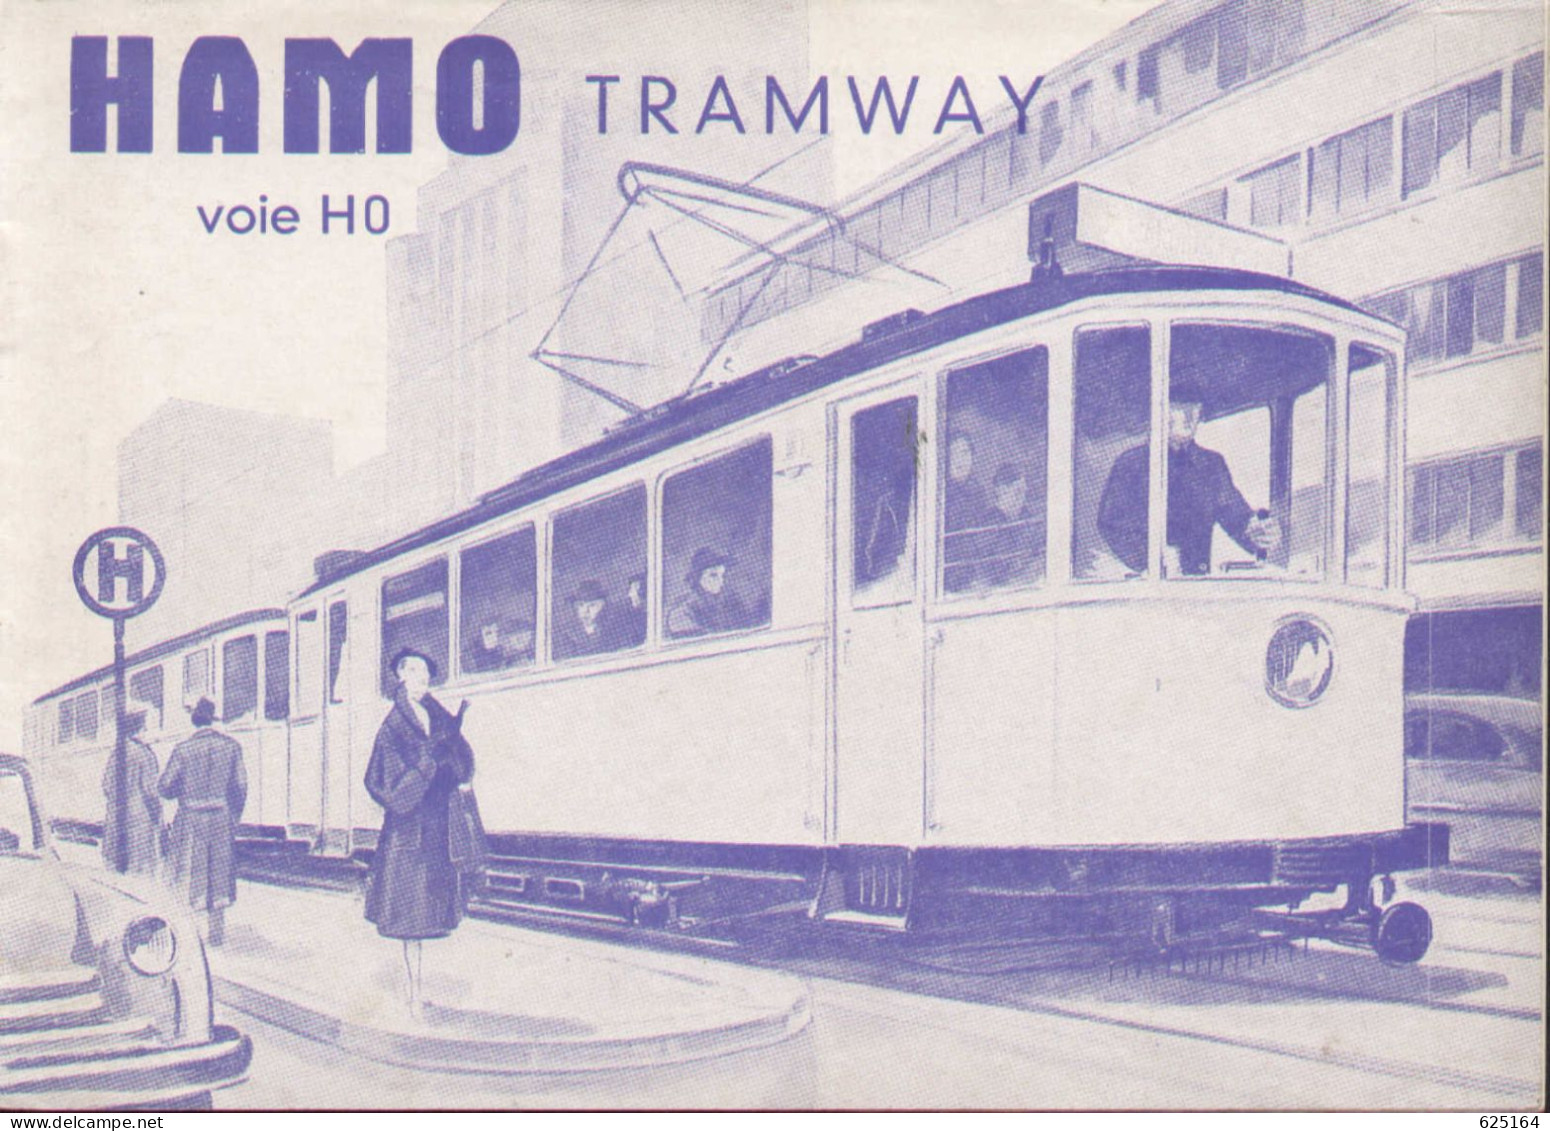 Catalogue HAMO TRAMWAY 1954 Voie HO 1:87 Französische Ausgabe - French